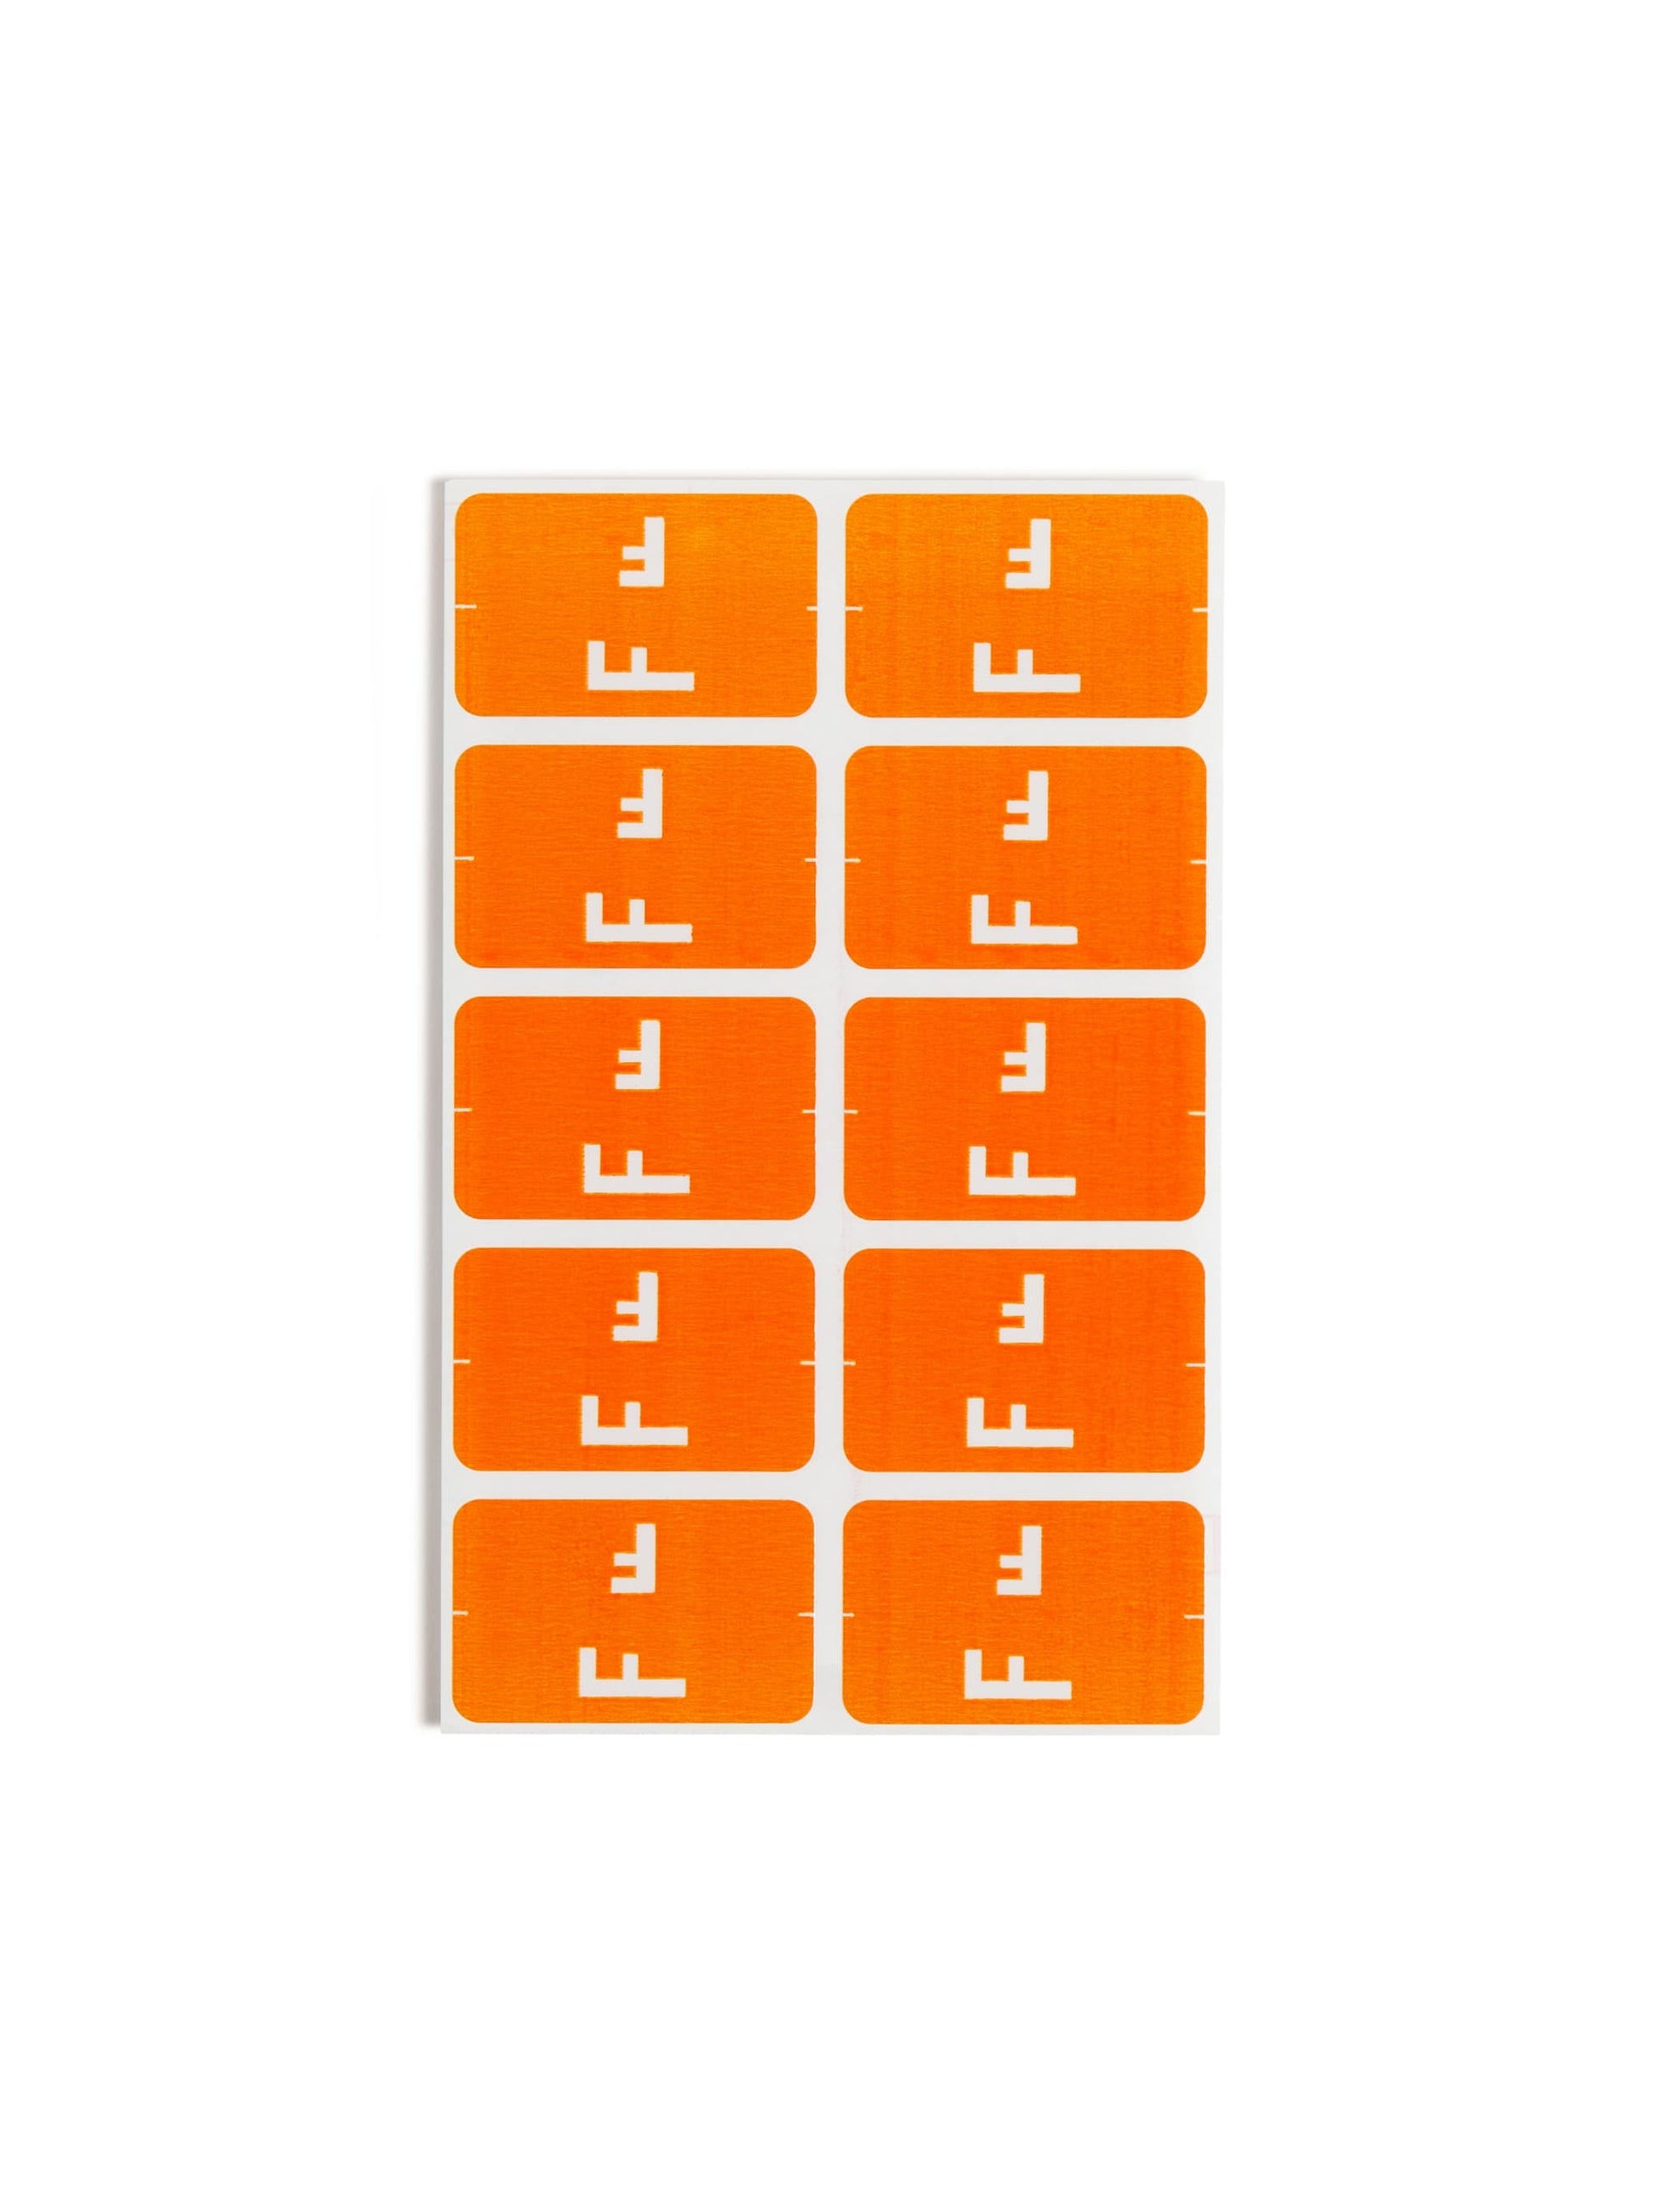 AlphaZ® ACCS Color Coded Alphabetic Labels - Sheets, Orange Color, 1" X 1-5/8" Size, 